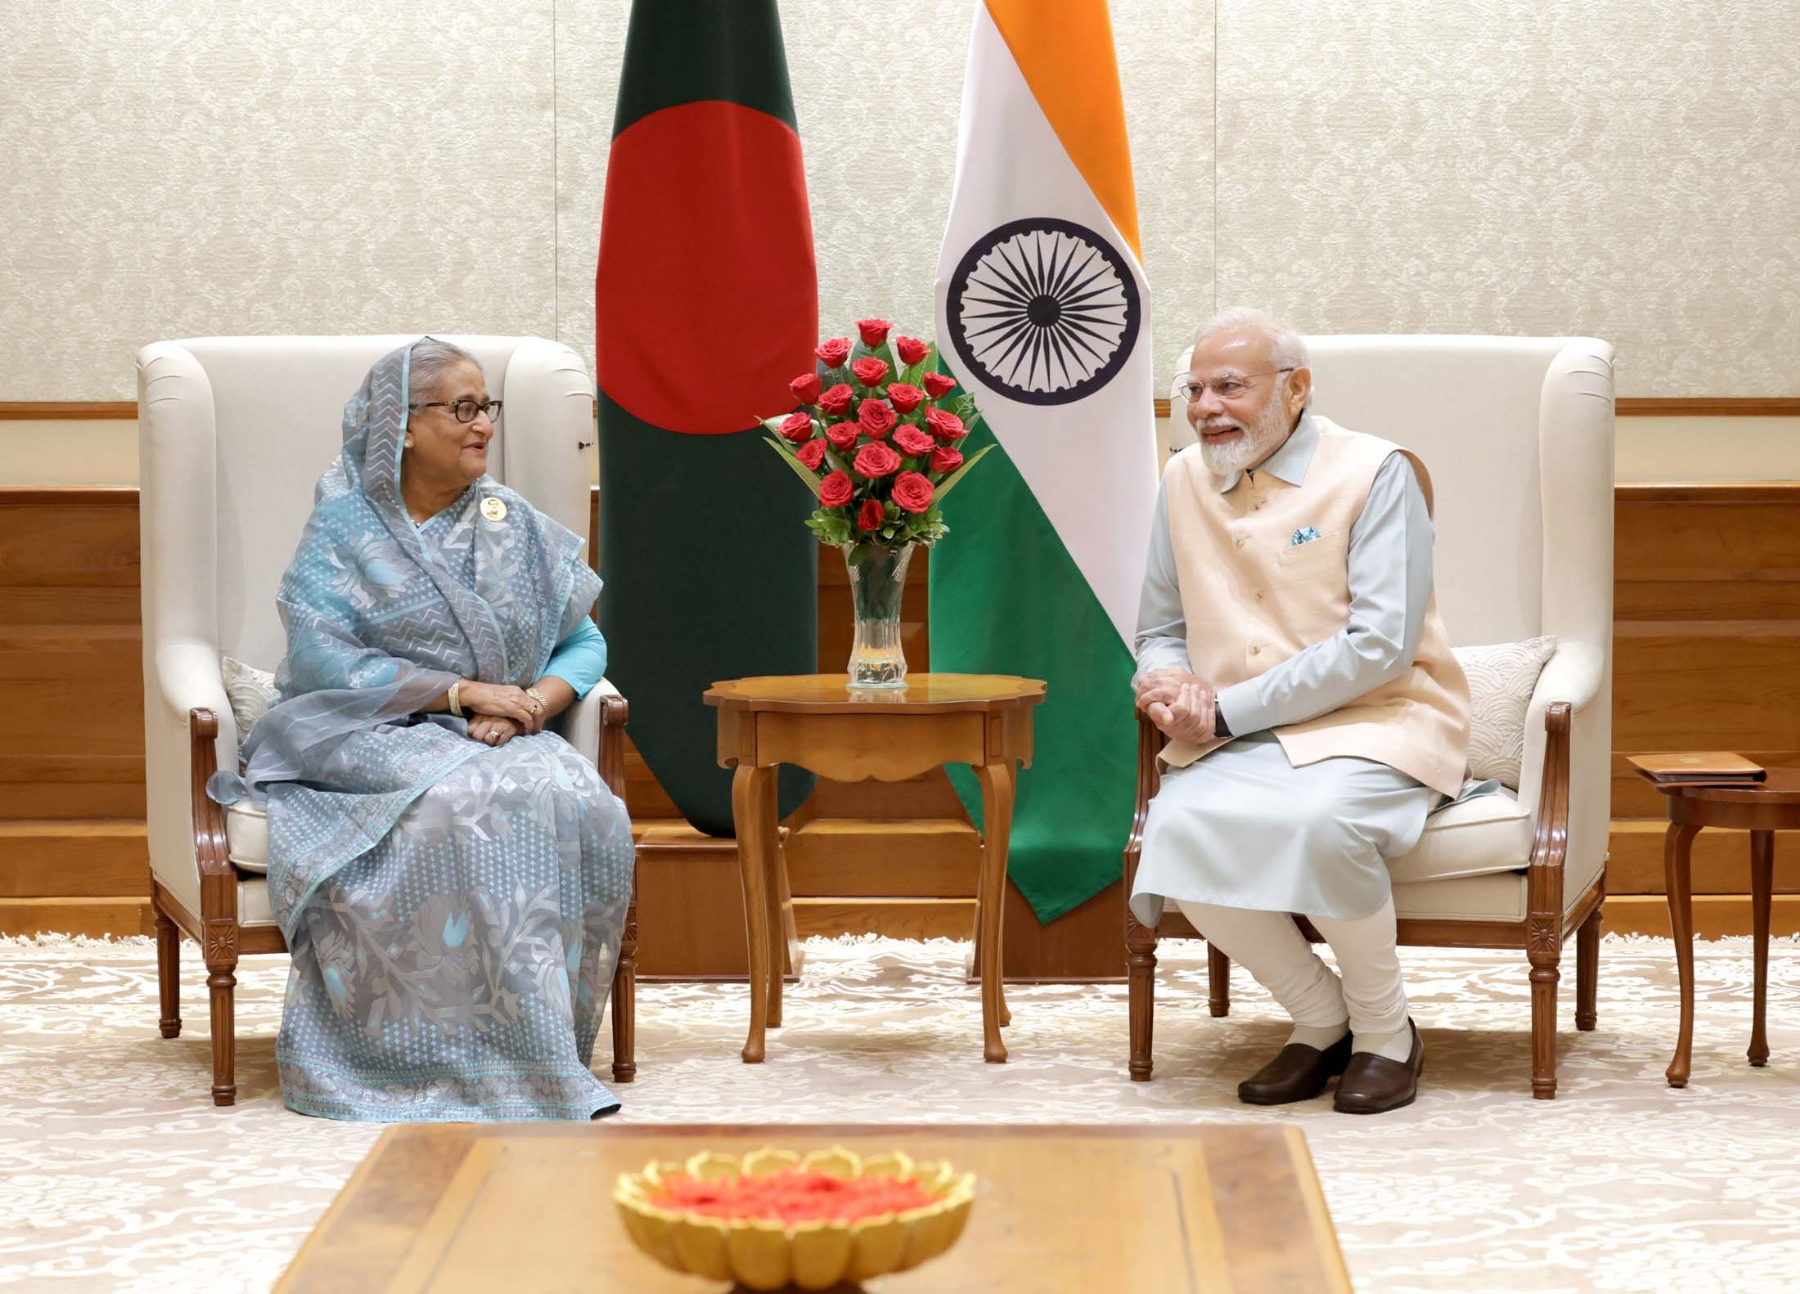 नई दिल्ली में शुक्रवार 08 सितंबर को प्रधानमंत्री नरेन्द्र मोदी और बांग्लादेश की प्रधानमंत्री सुश्री शेख हसीना के साथ द्विपक्षीय बैठक का दृश्य। हिन्दुस्थान समाचार/फोटो गणेश बिष्ट